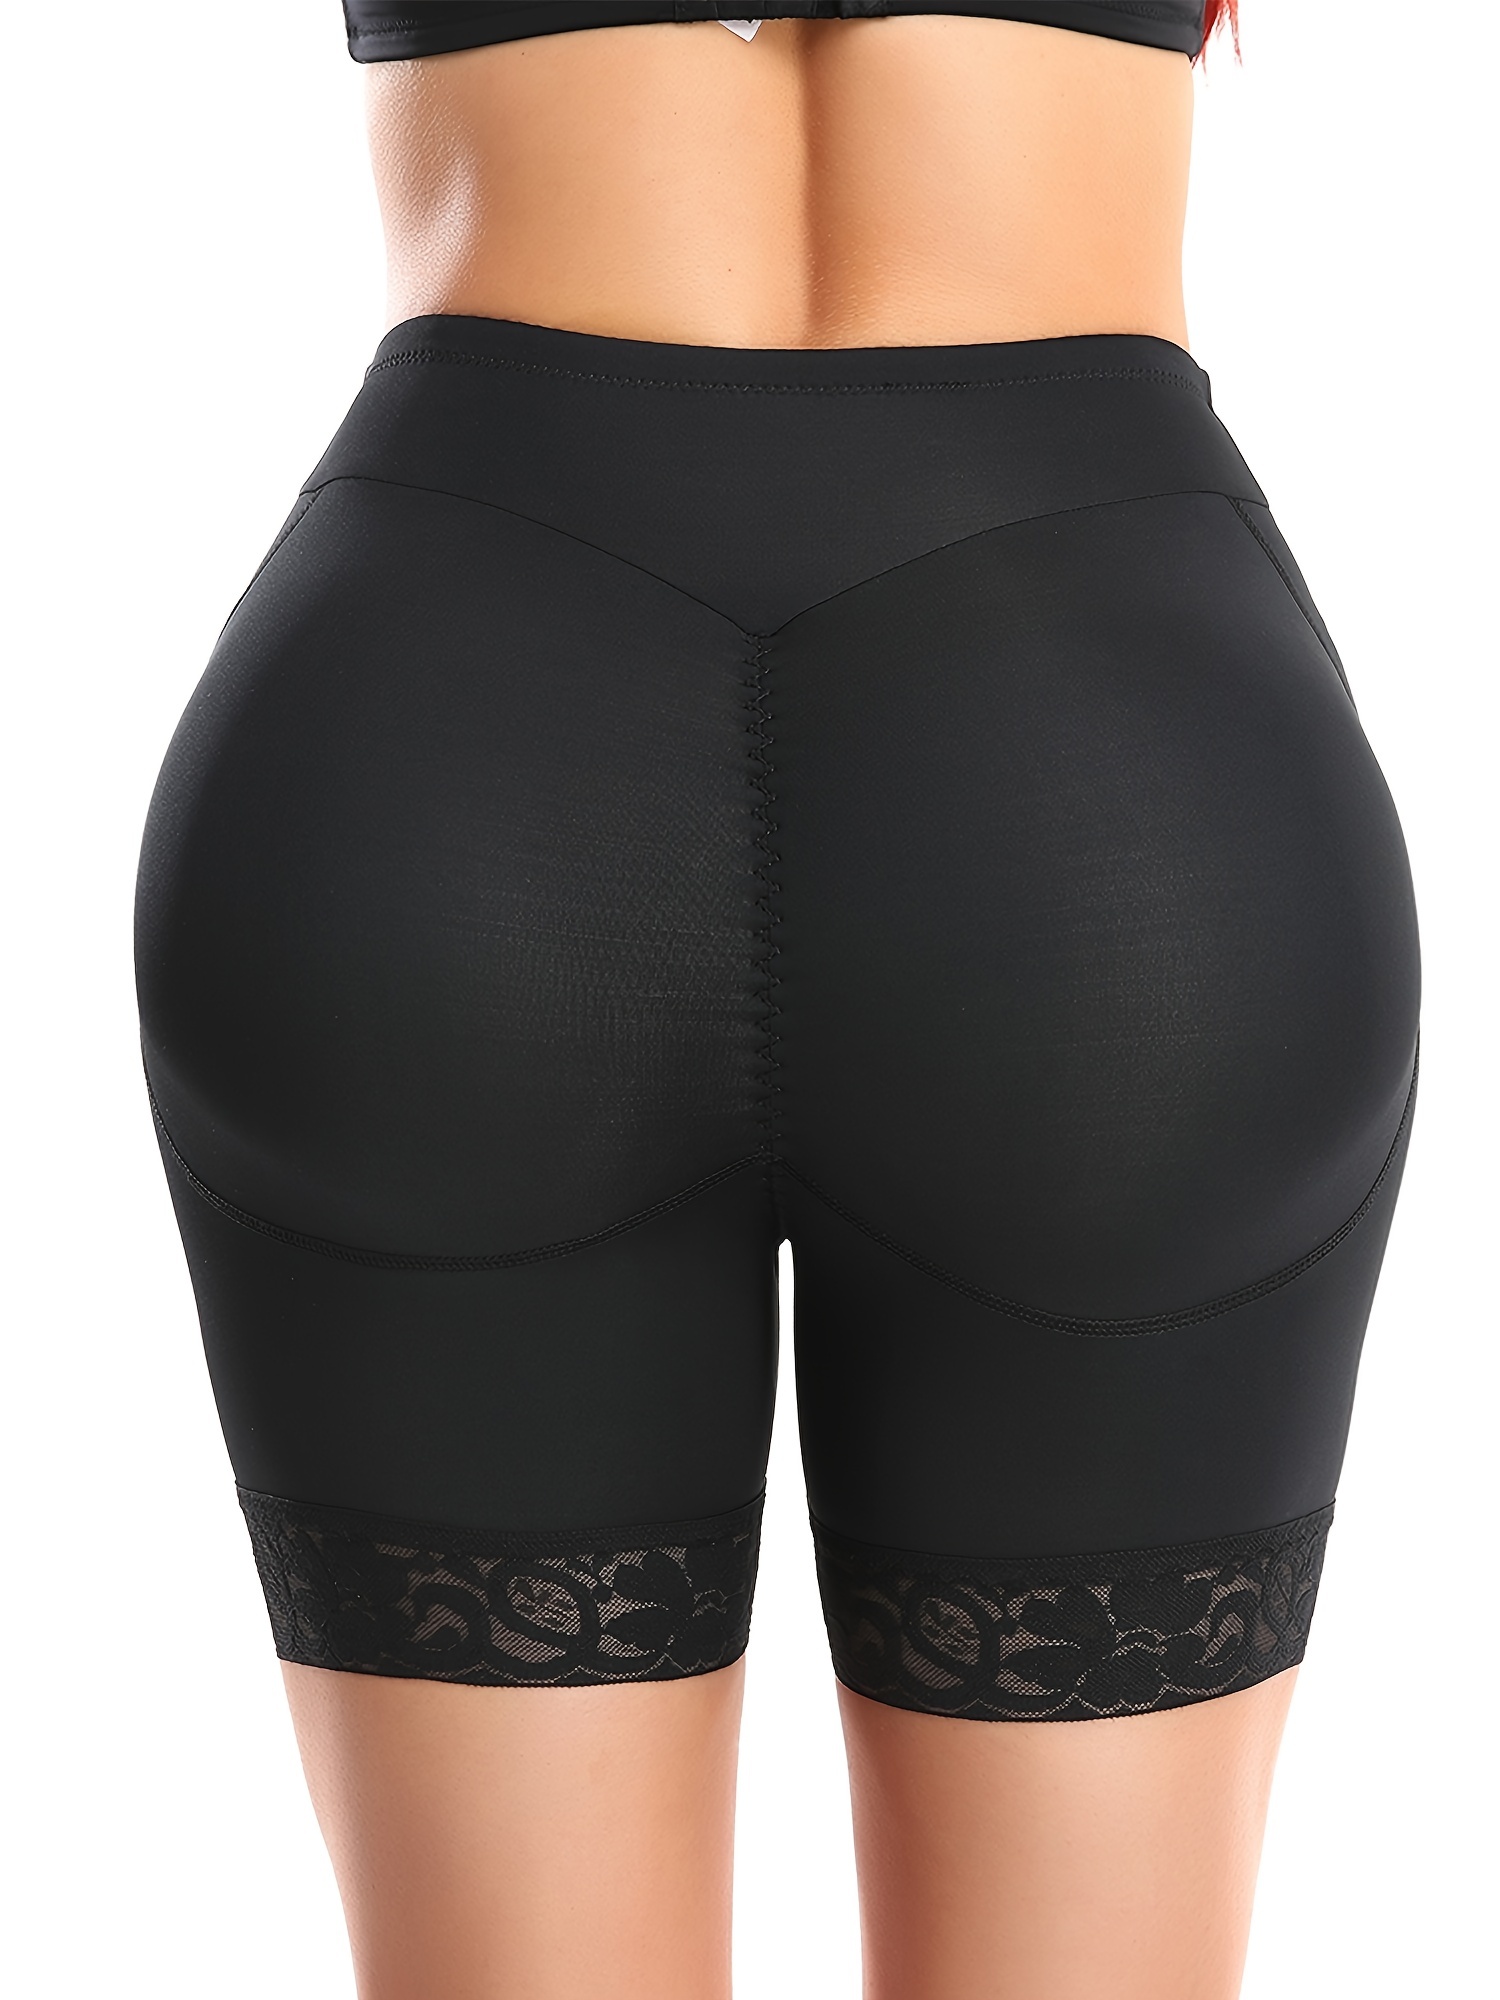 Inevnen Seamless Fake Buttock Briefs Butt Lifter Padded Panties Lace  Underwear - Enhancing Body Shaper for Women 